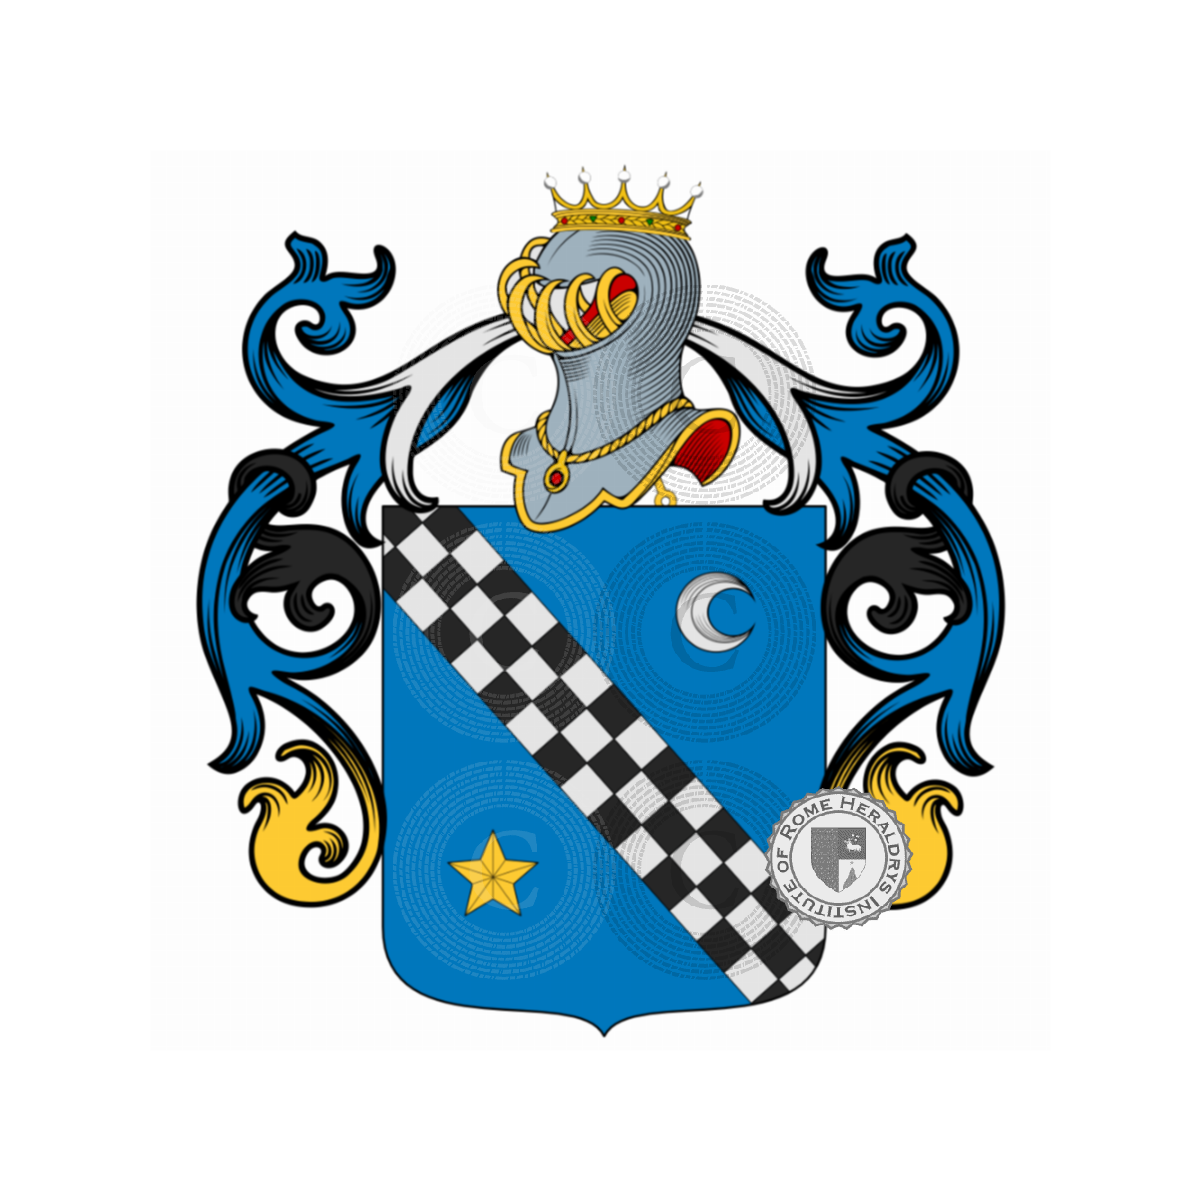 Coat of arms of familyElia